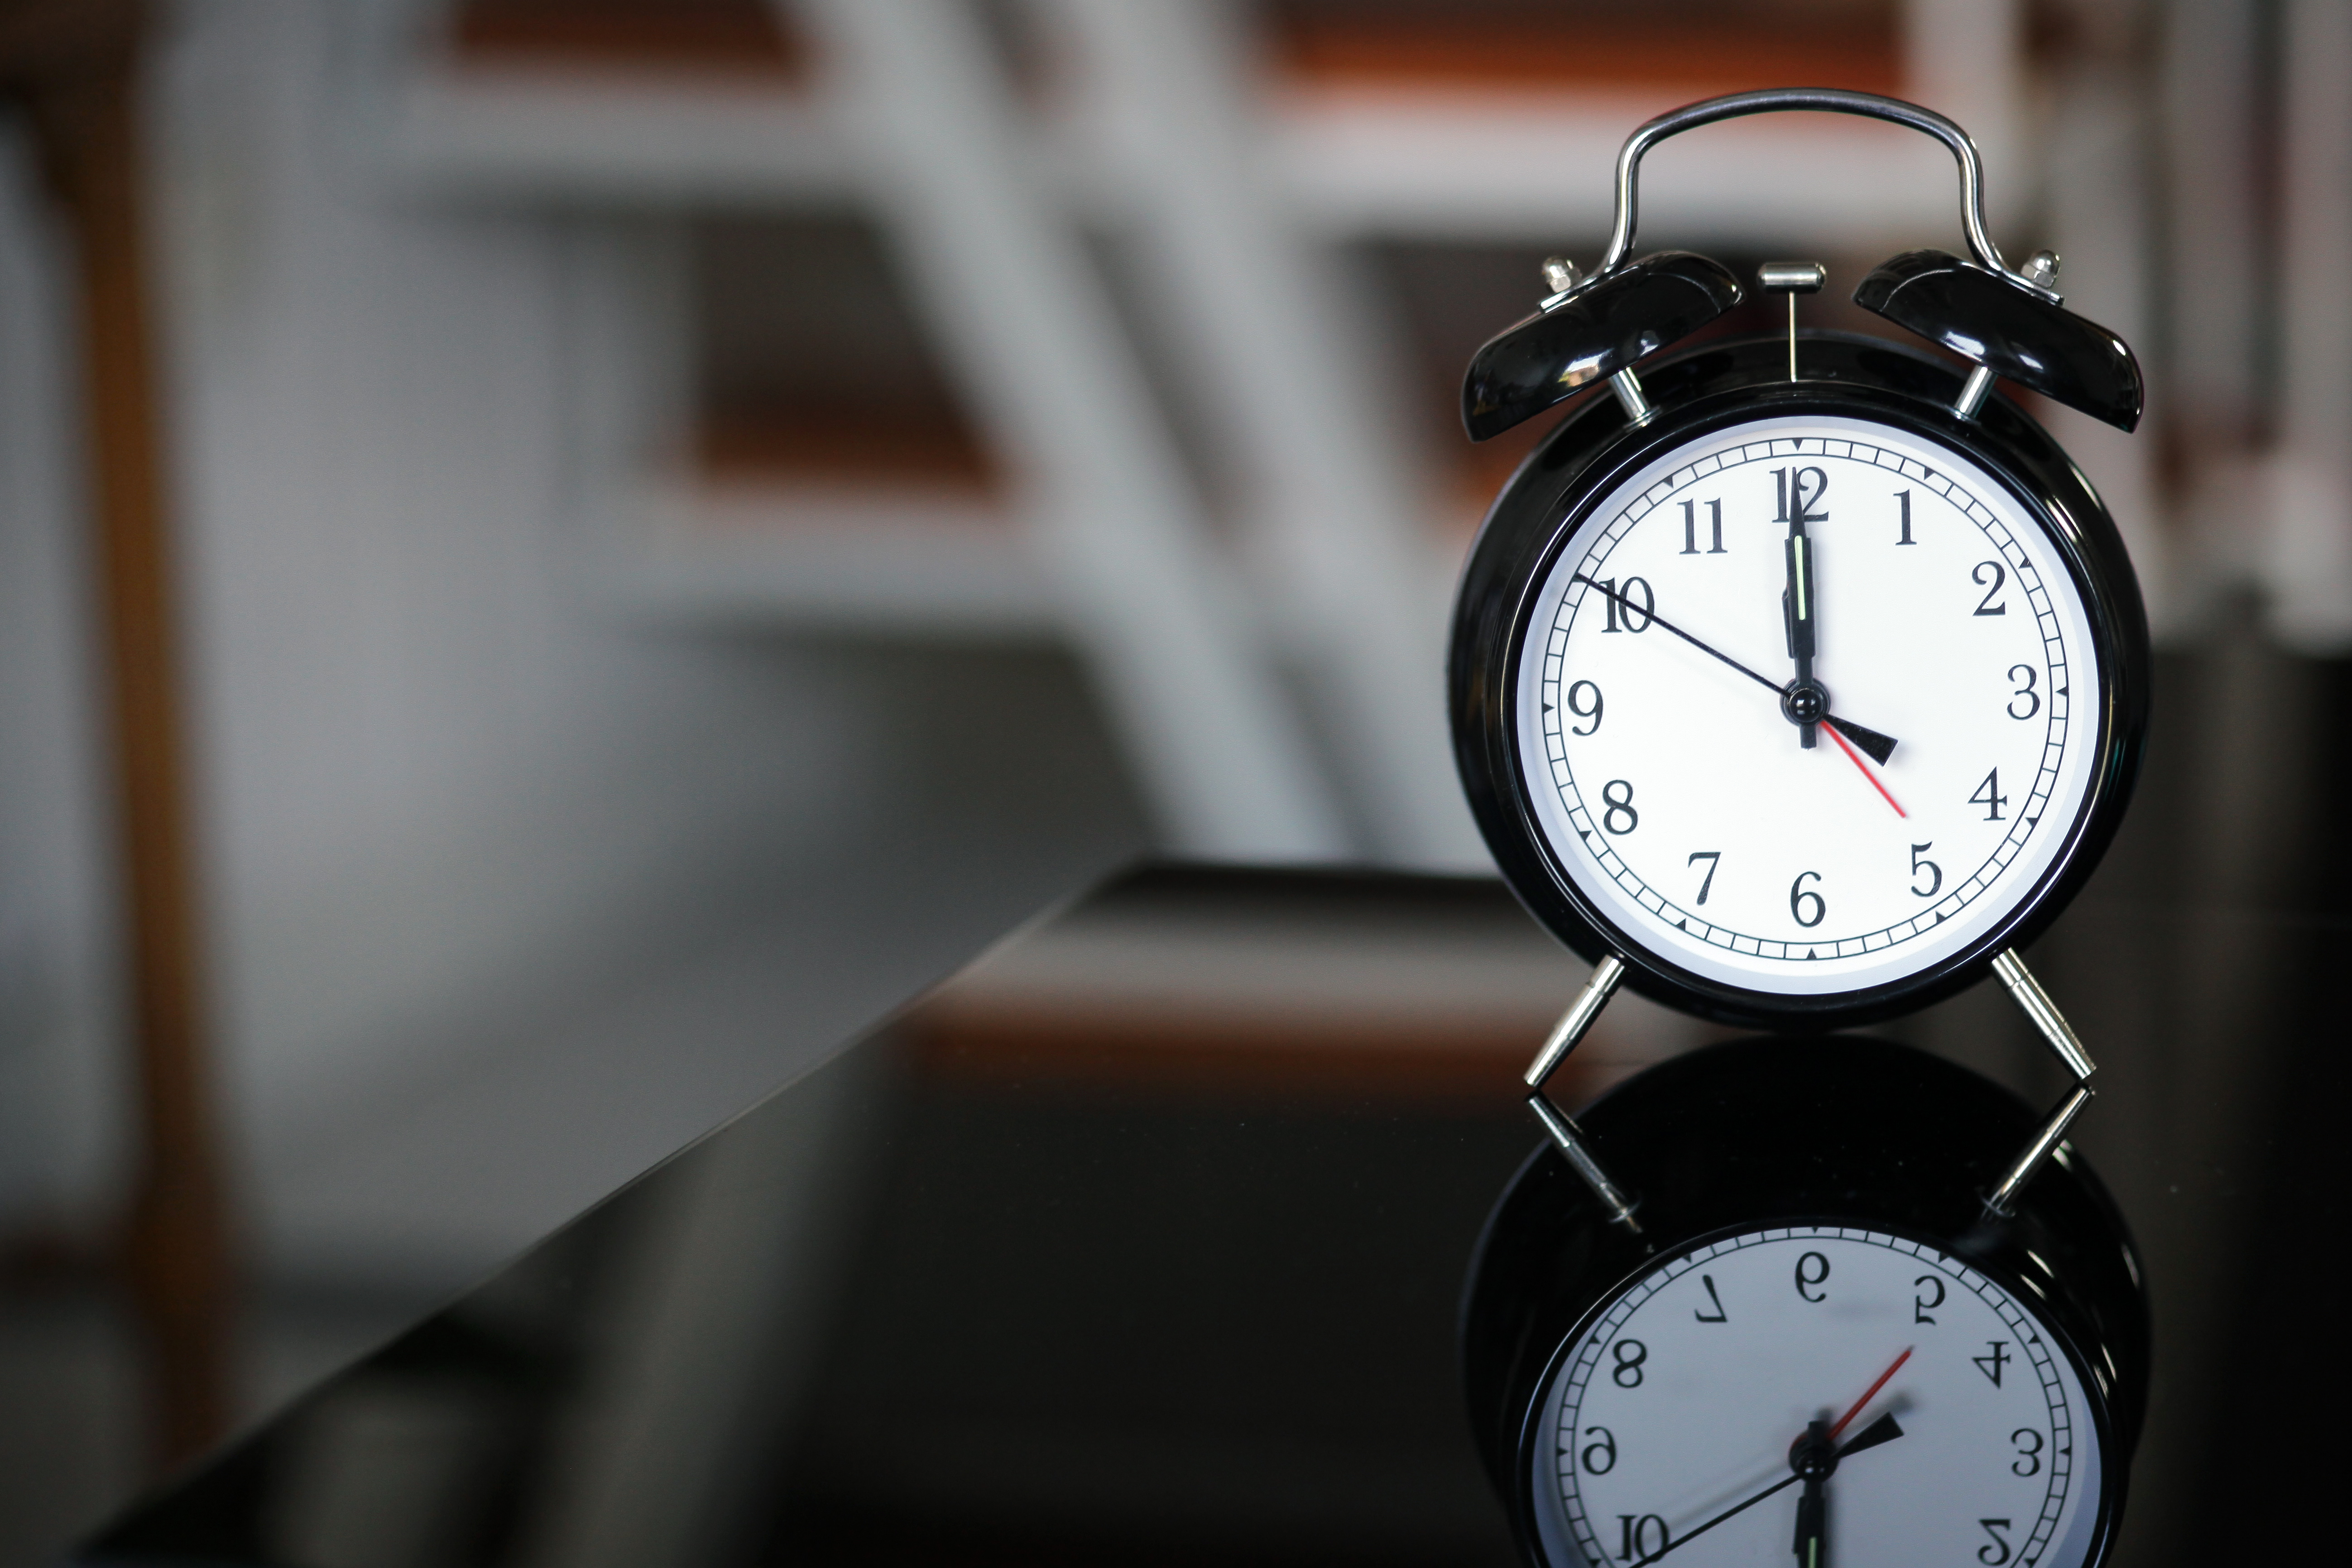 Cambiare il tempo: come si possono ridurre gli effetti sul sonno e sulla salute?